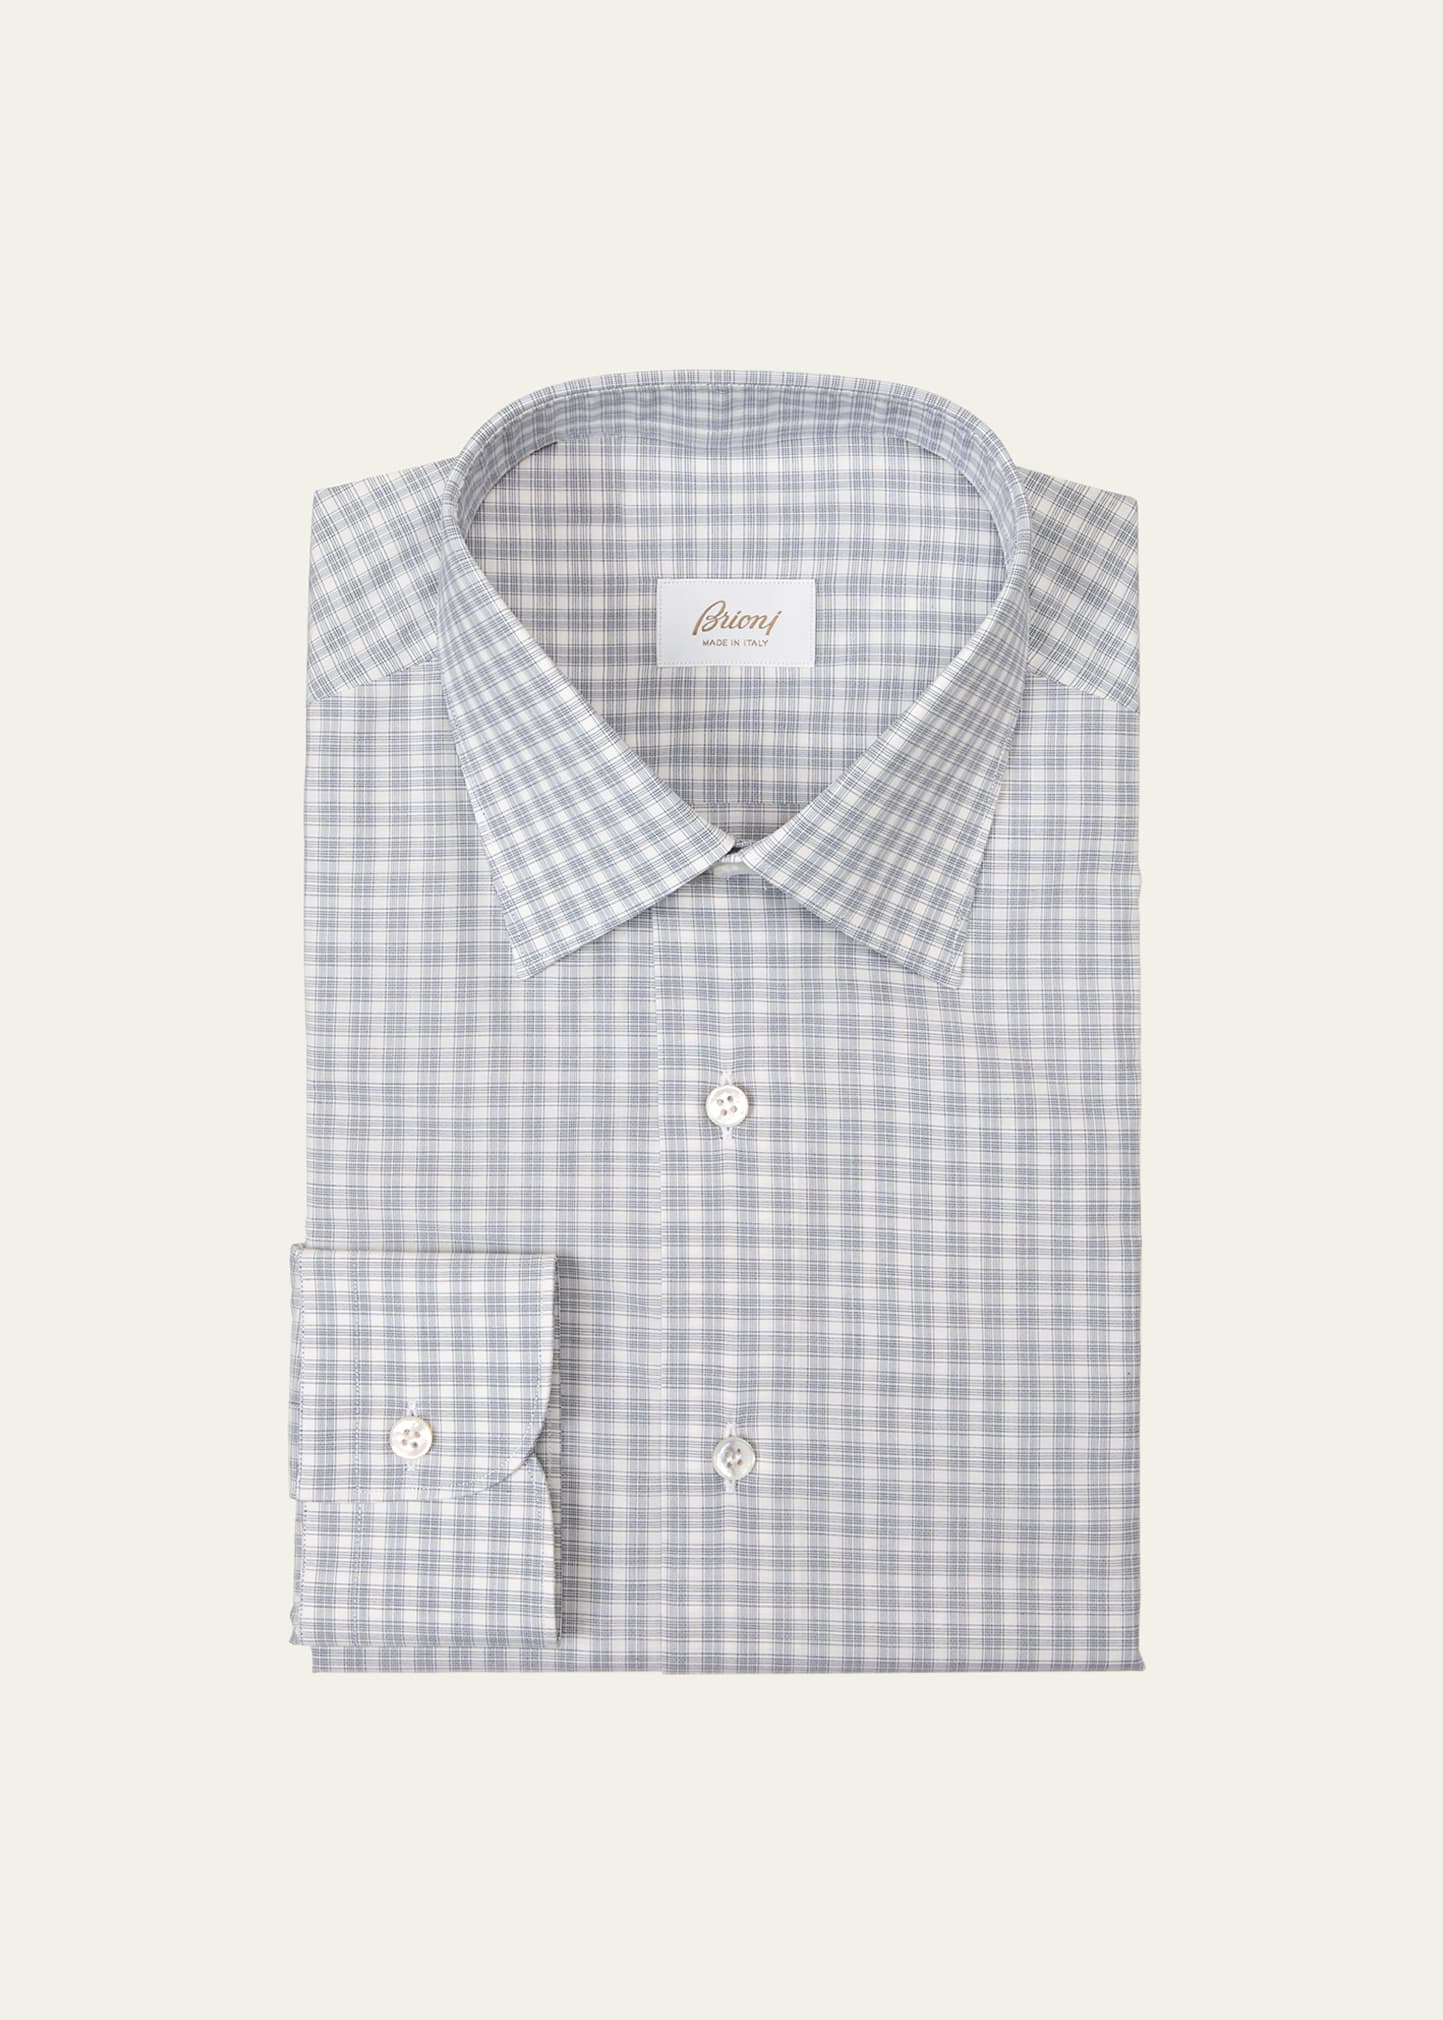 Men's Cotton Micro-Check Dress Shirt